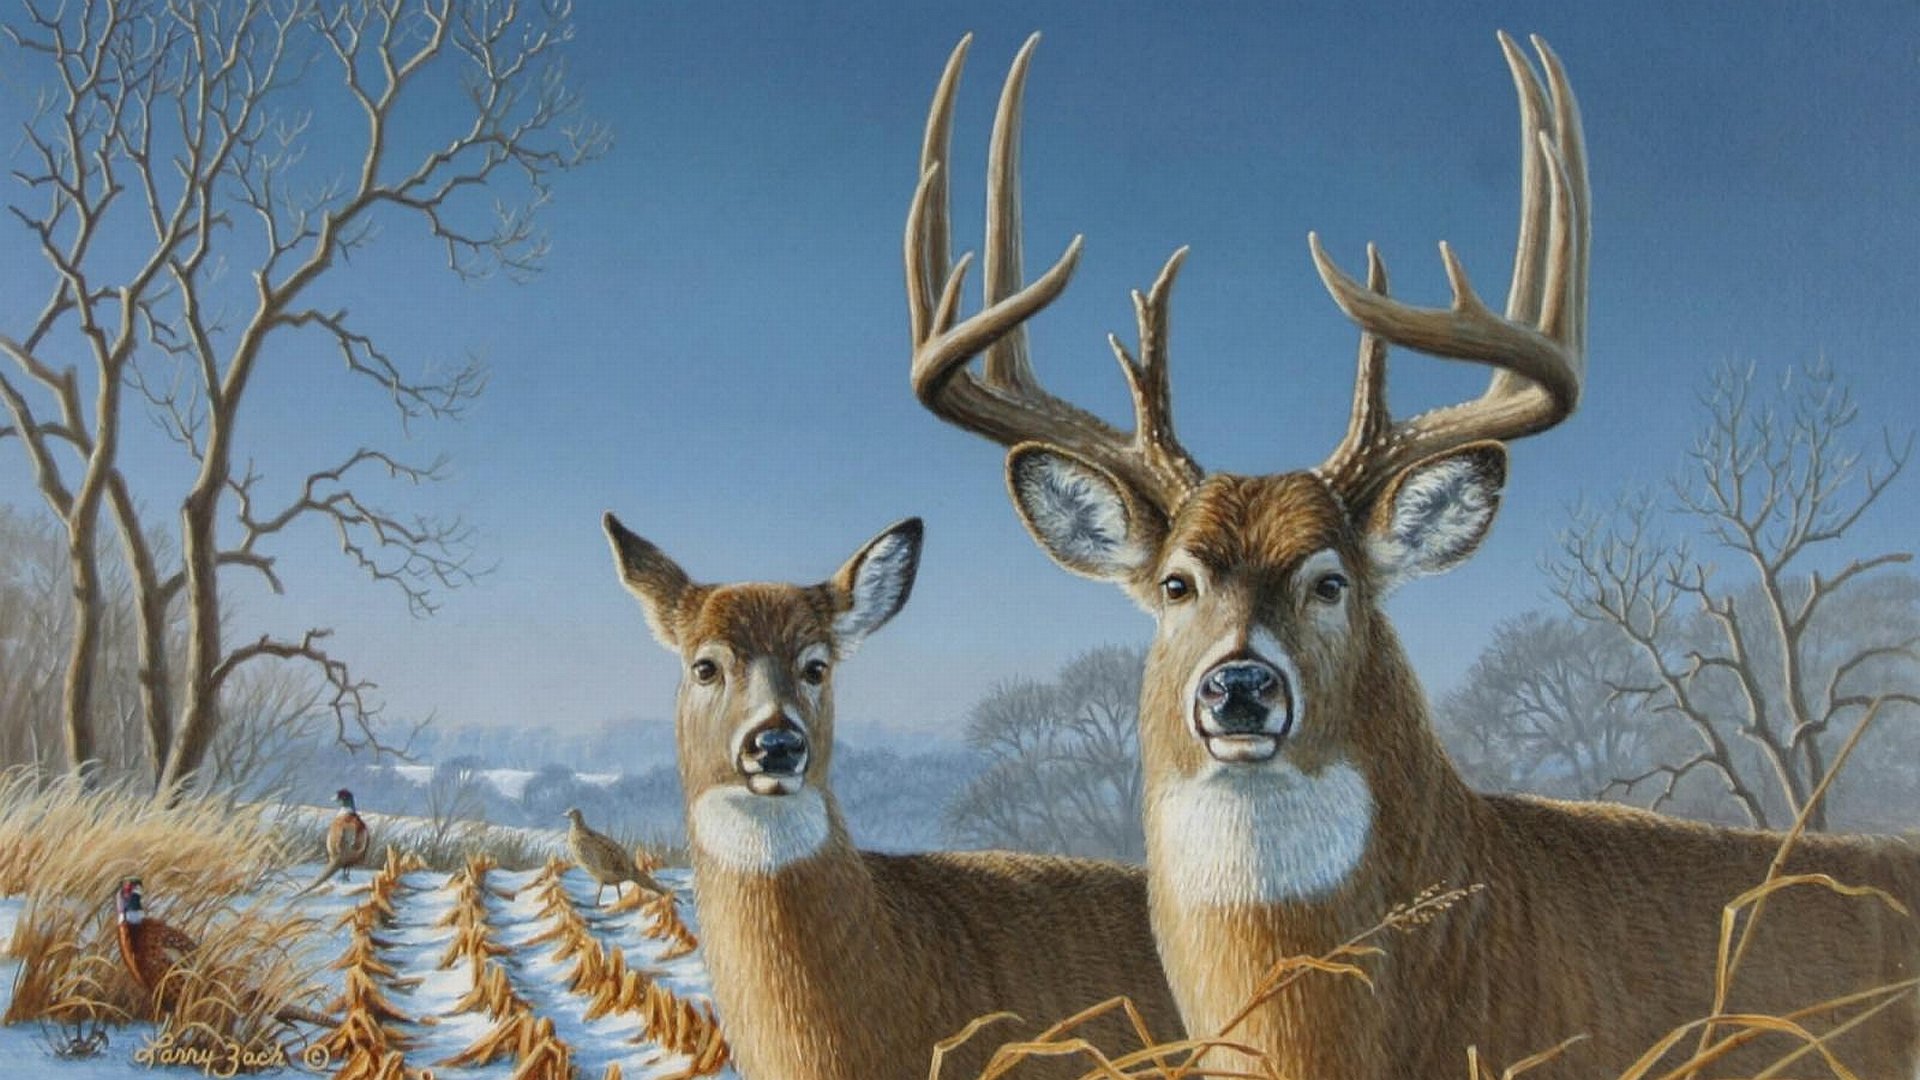 Deer wallpapers 1920x1080 Full HD (1080p) desktop backgrounds